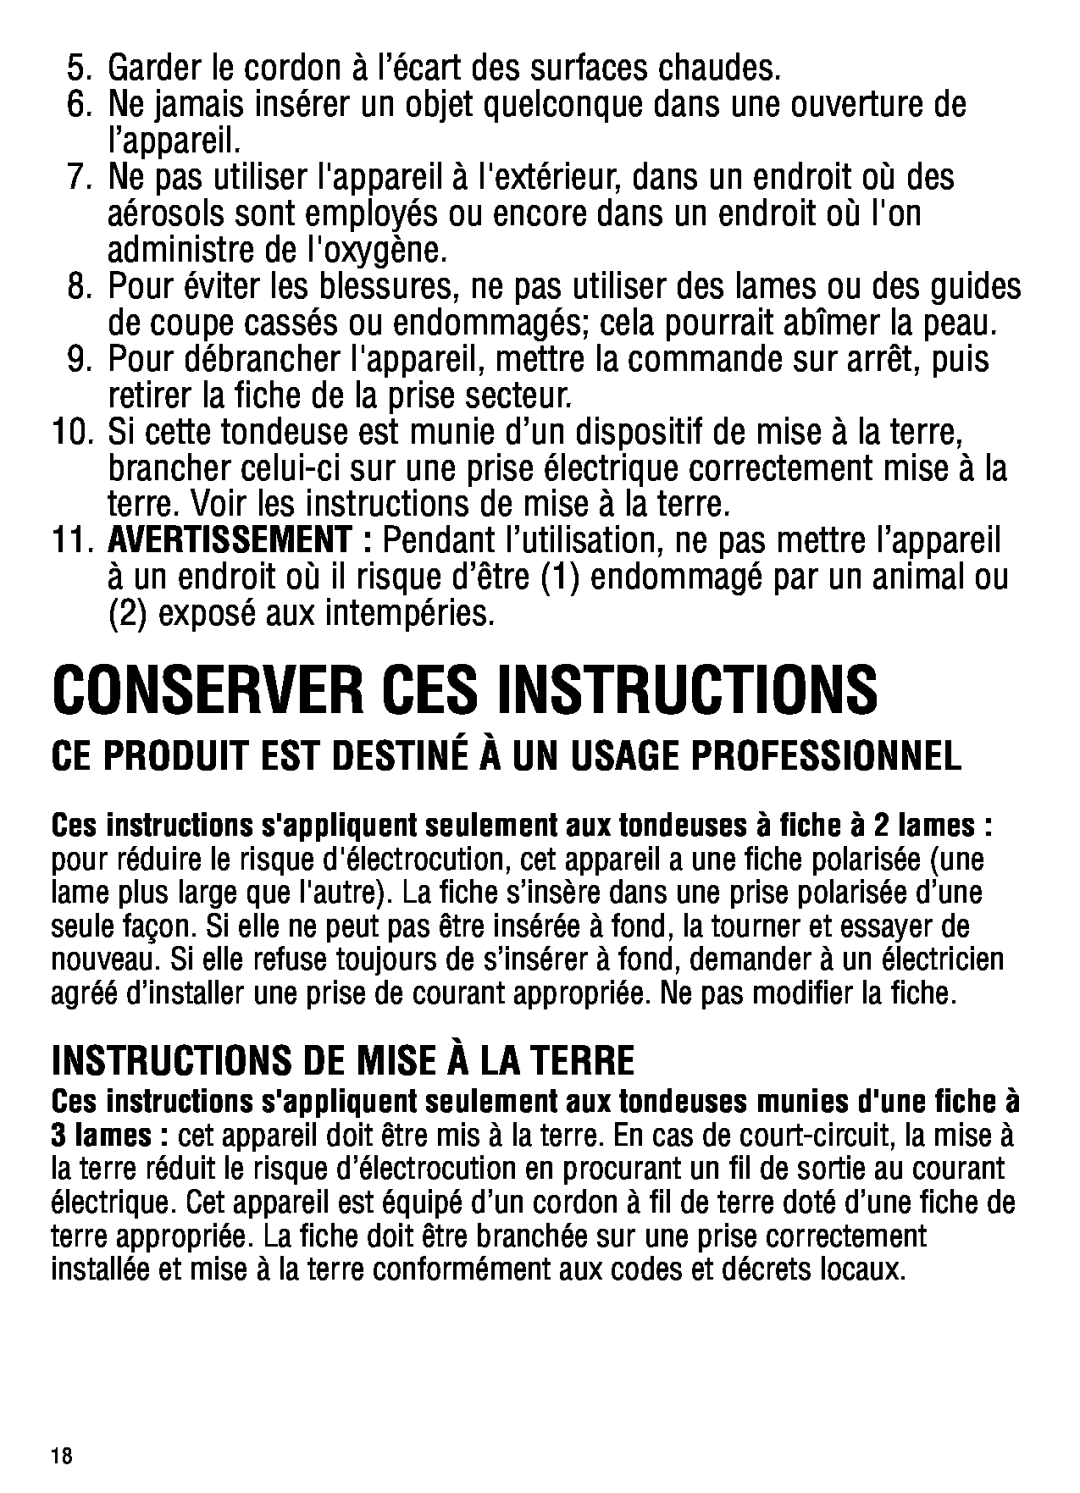 Andis Company ML, GC manual Conserver Ces Instructions, Instructions De Mise À La Terre 